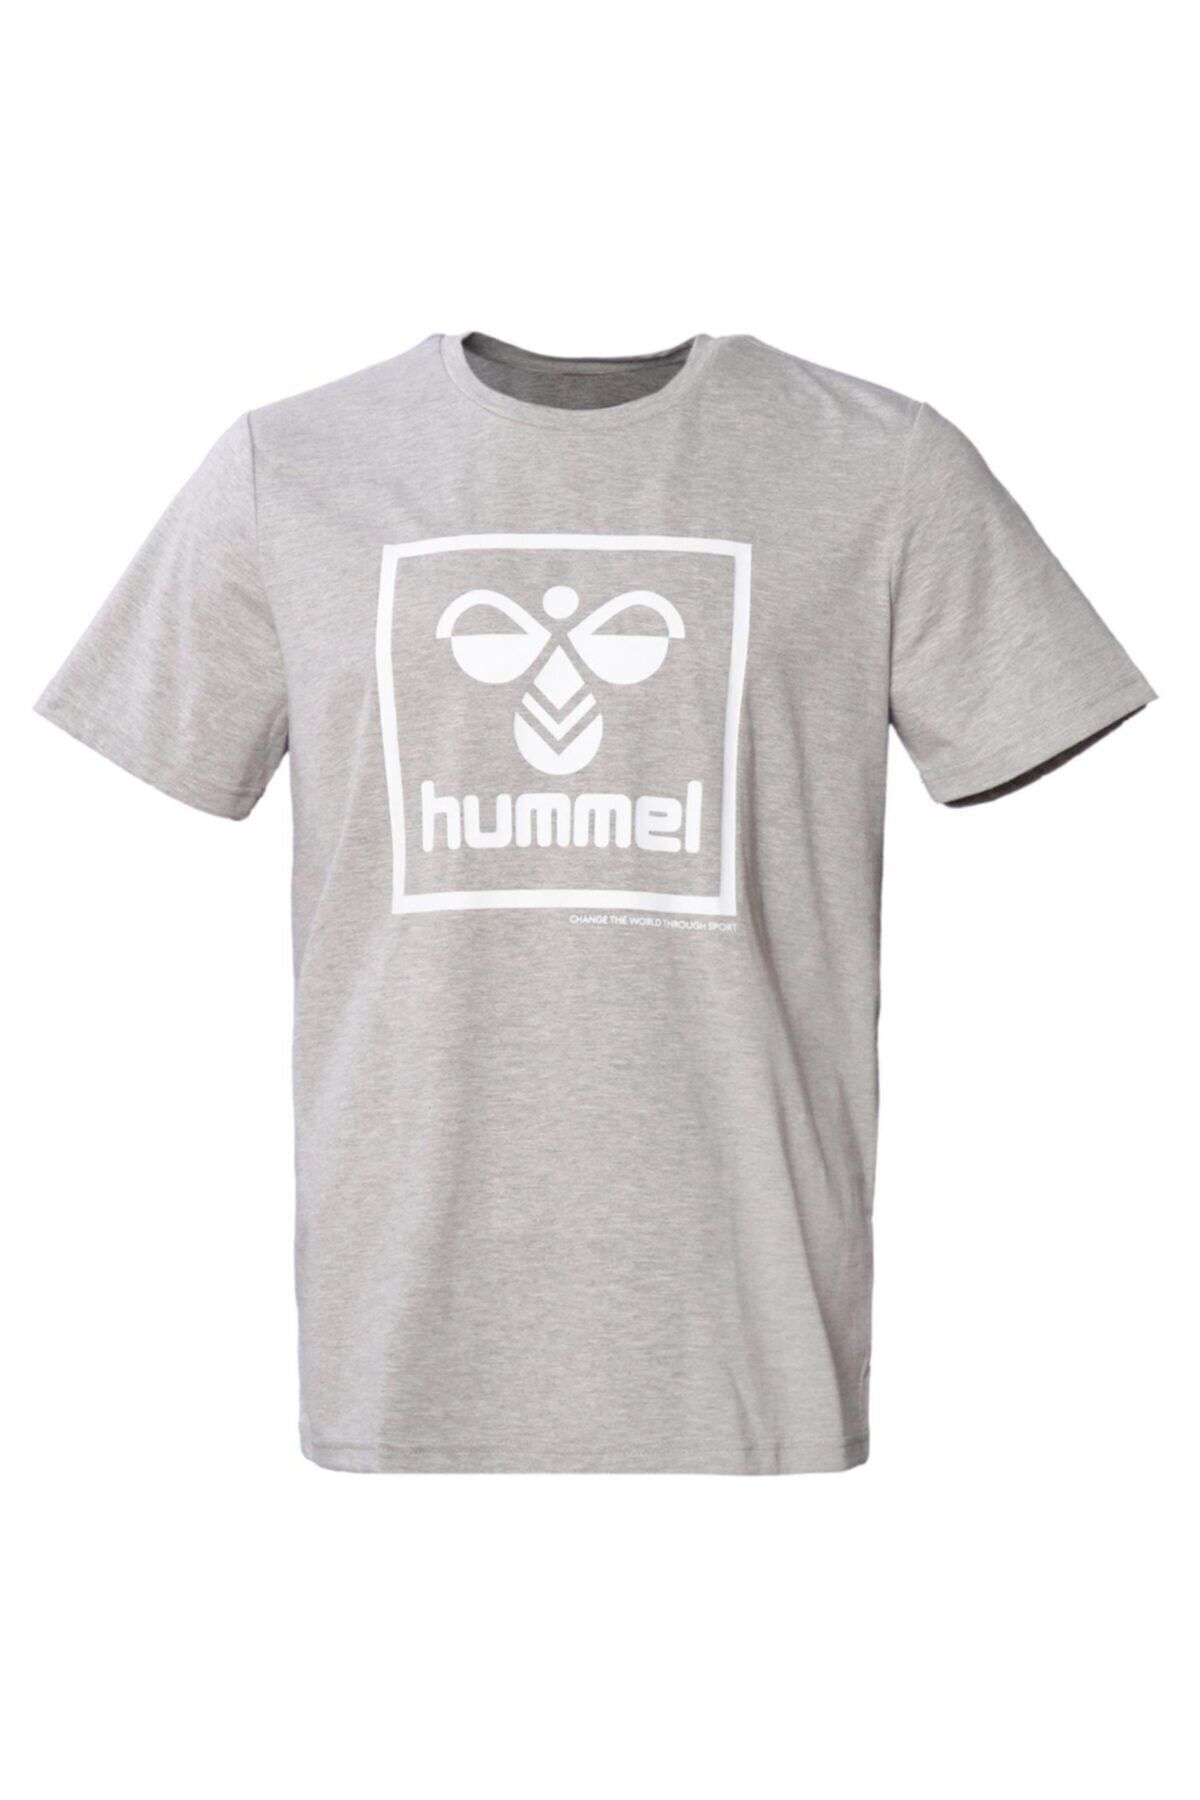 hummel Erkek T-shirt Gri 911558-2006 Hmlt-ısam